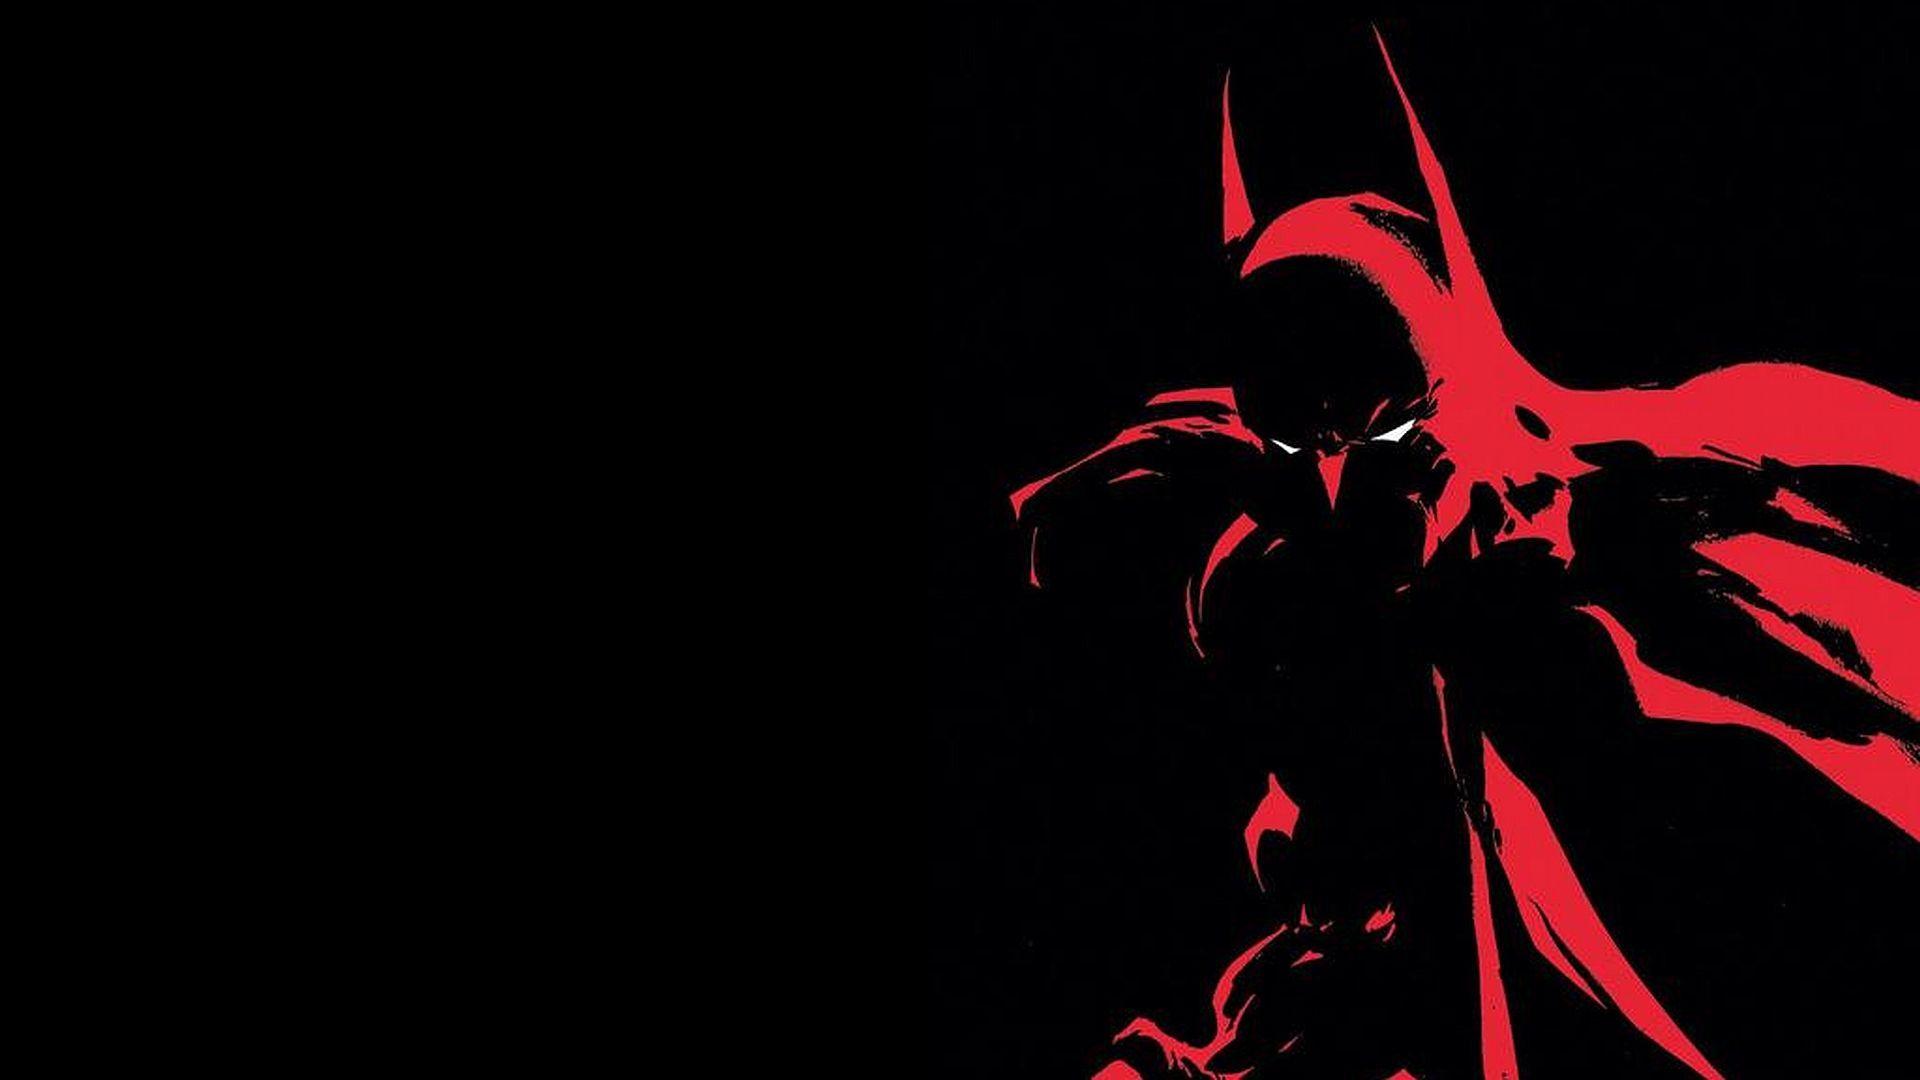 Black and Red Batman Logo - Black And Red Batman HD Wallpaper. design. Batman, Batman comic